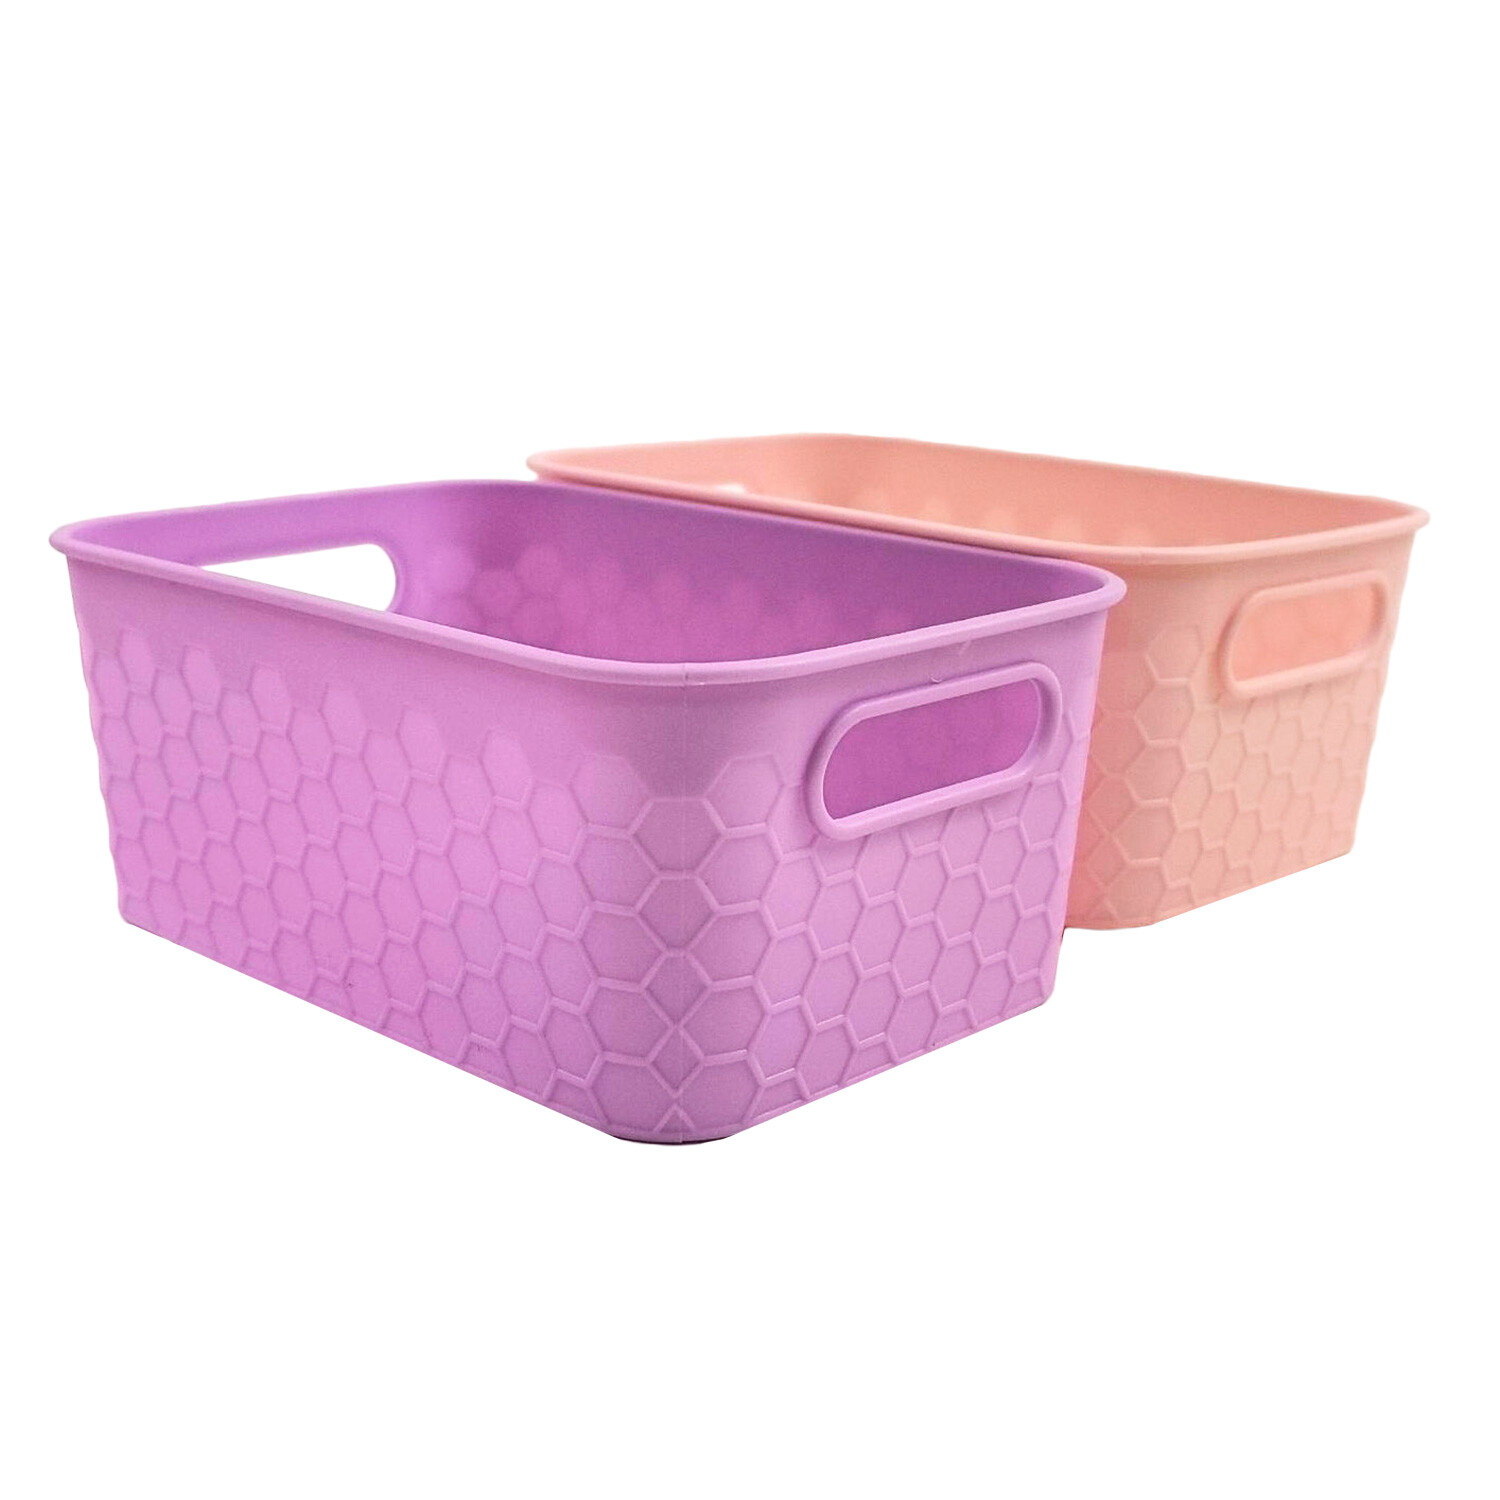 Honeycomb Storage Basket Image 1